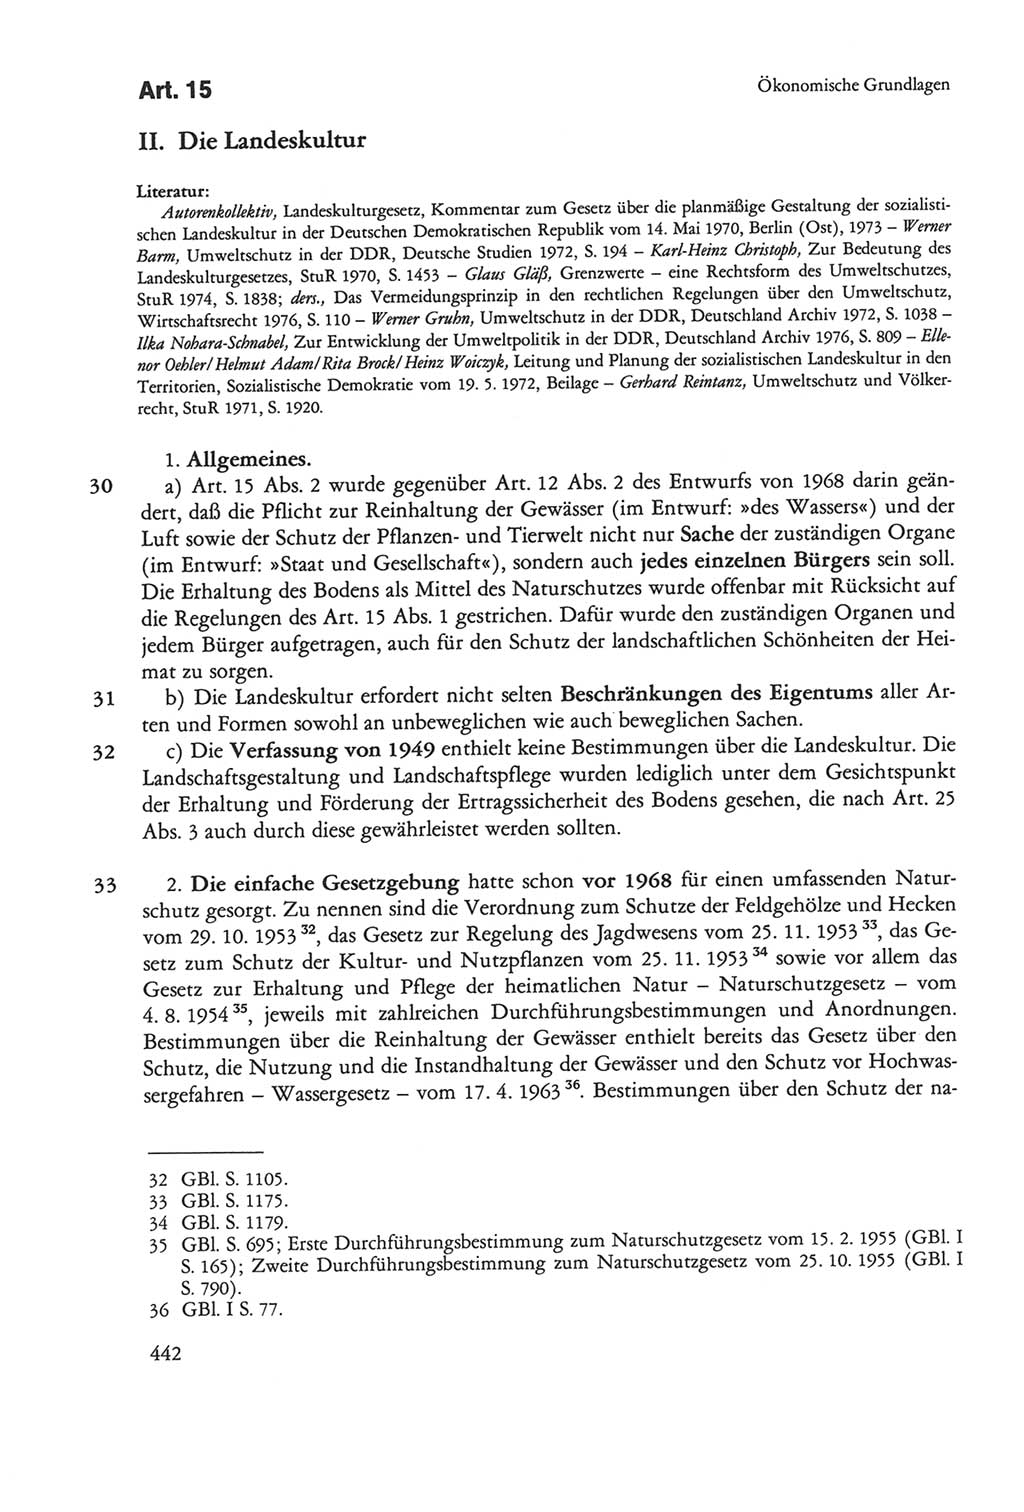 Die sozialistische Verfassung der Deutschen Demokratischen Republik (DDR), Kommentar mit einem Nachtrag 1997, Seite 442 (Soz. Verf. DDR Komm. Nachtr. 1997, S. 442)